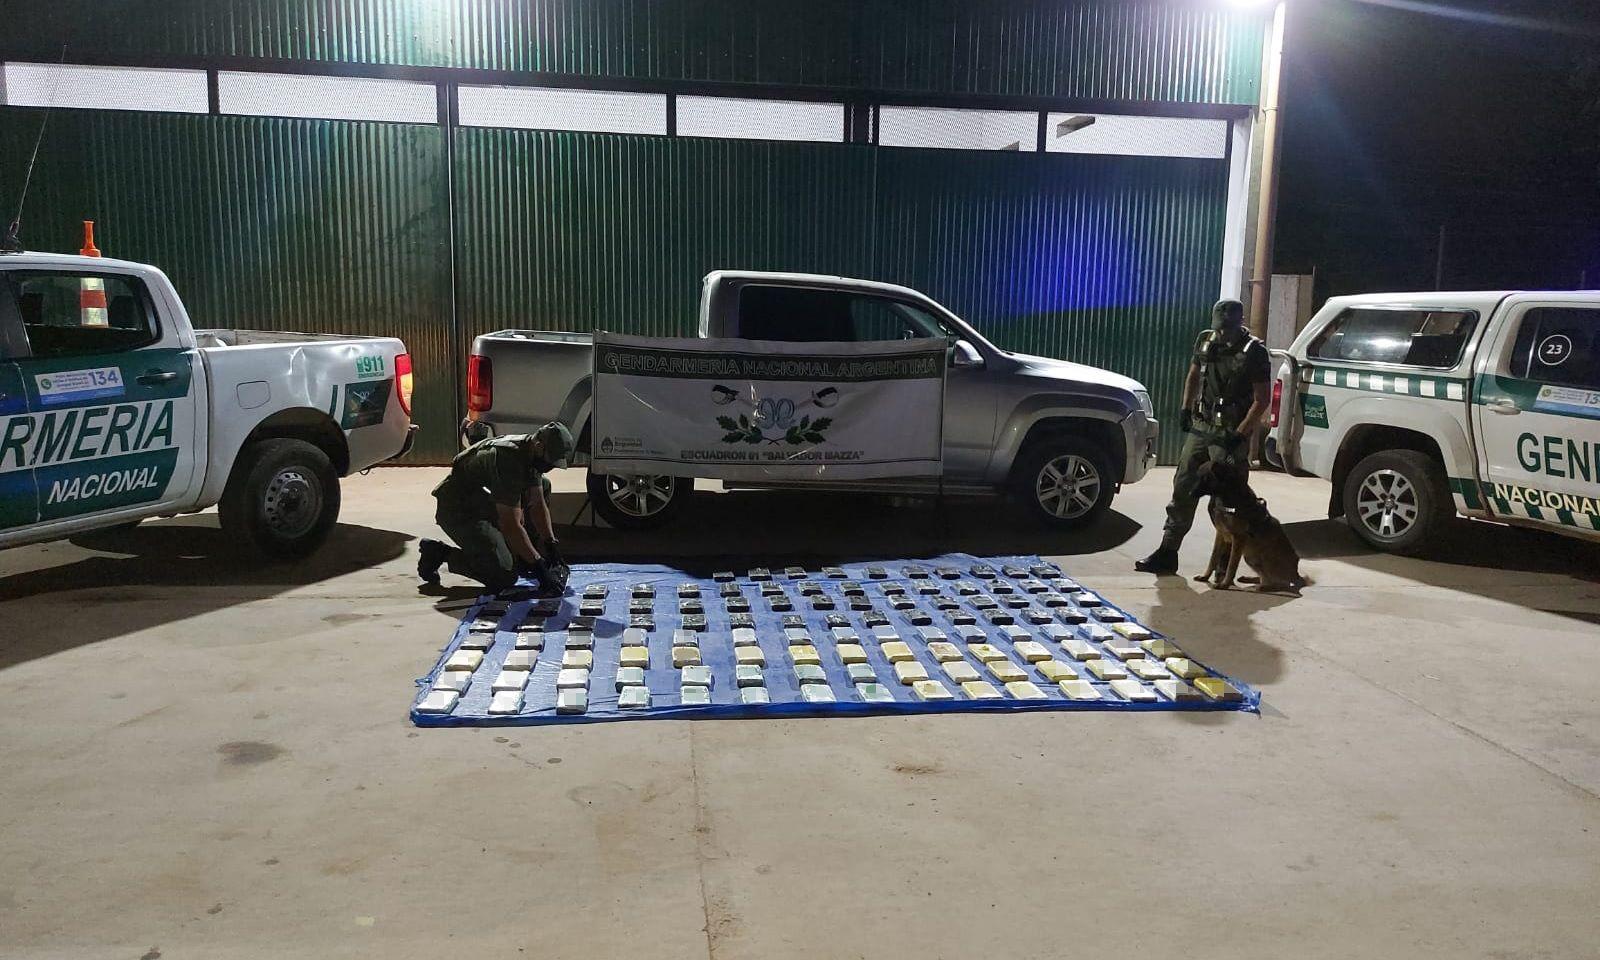 Gendarmeriacutea detuvo a una camioneta con paquetes amorfos- eran 112 kilos de cocaiacutena